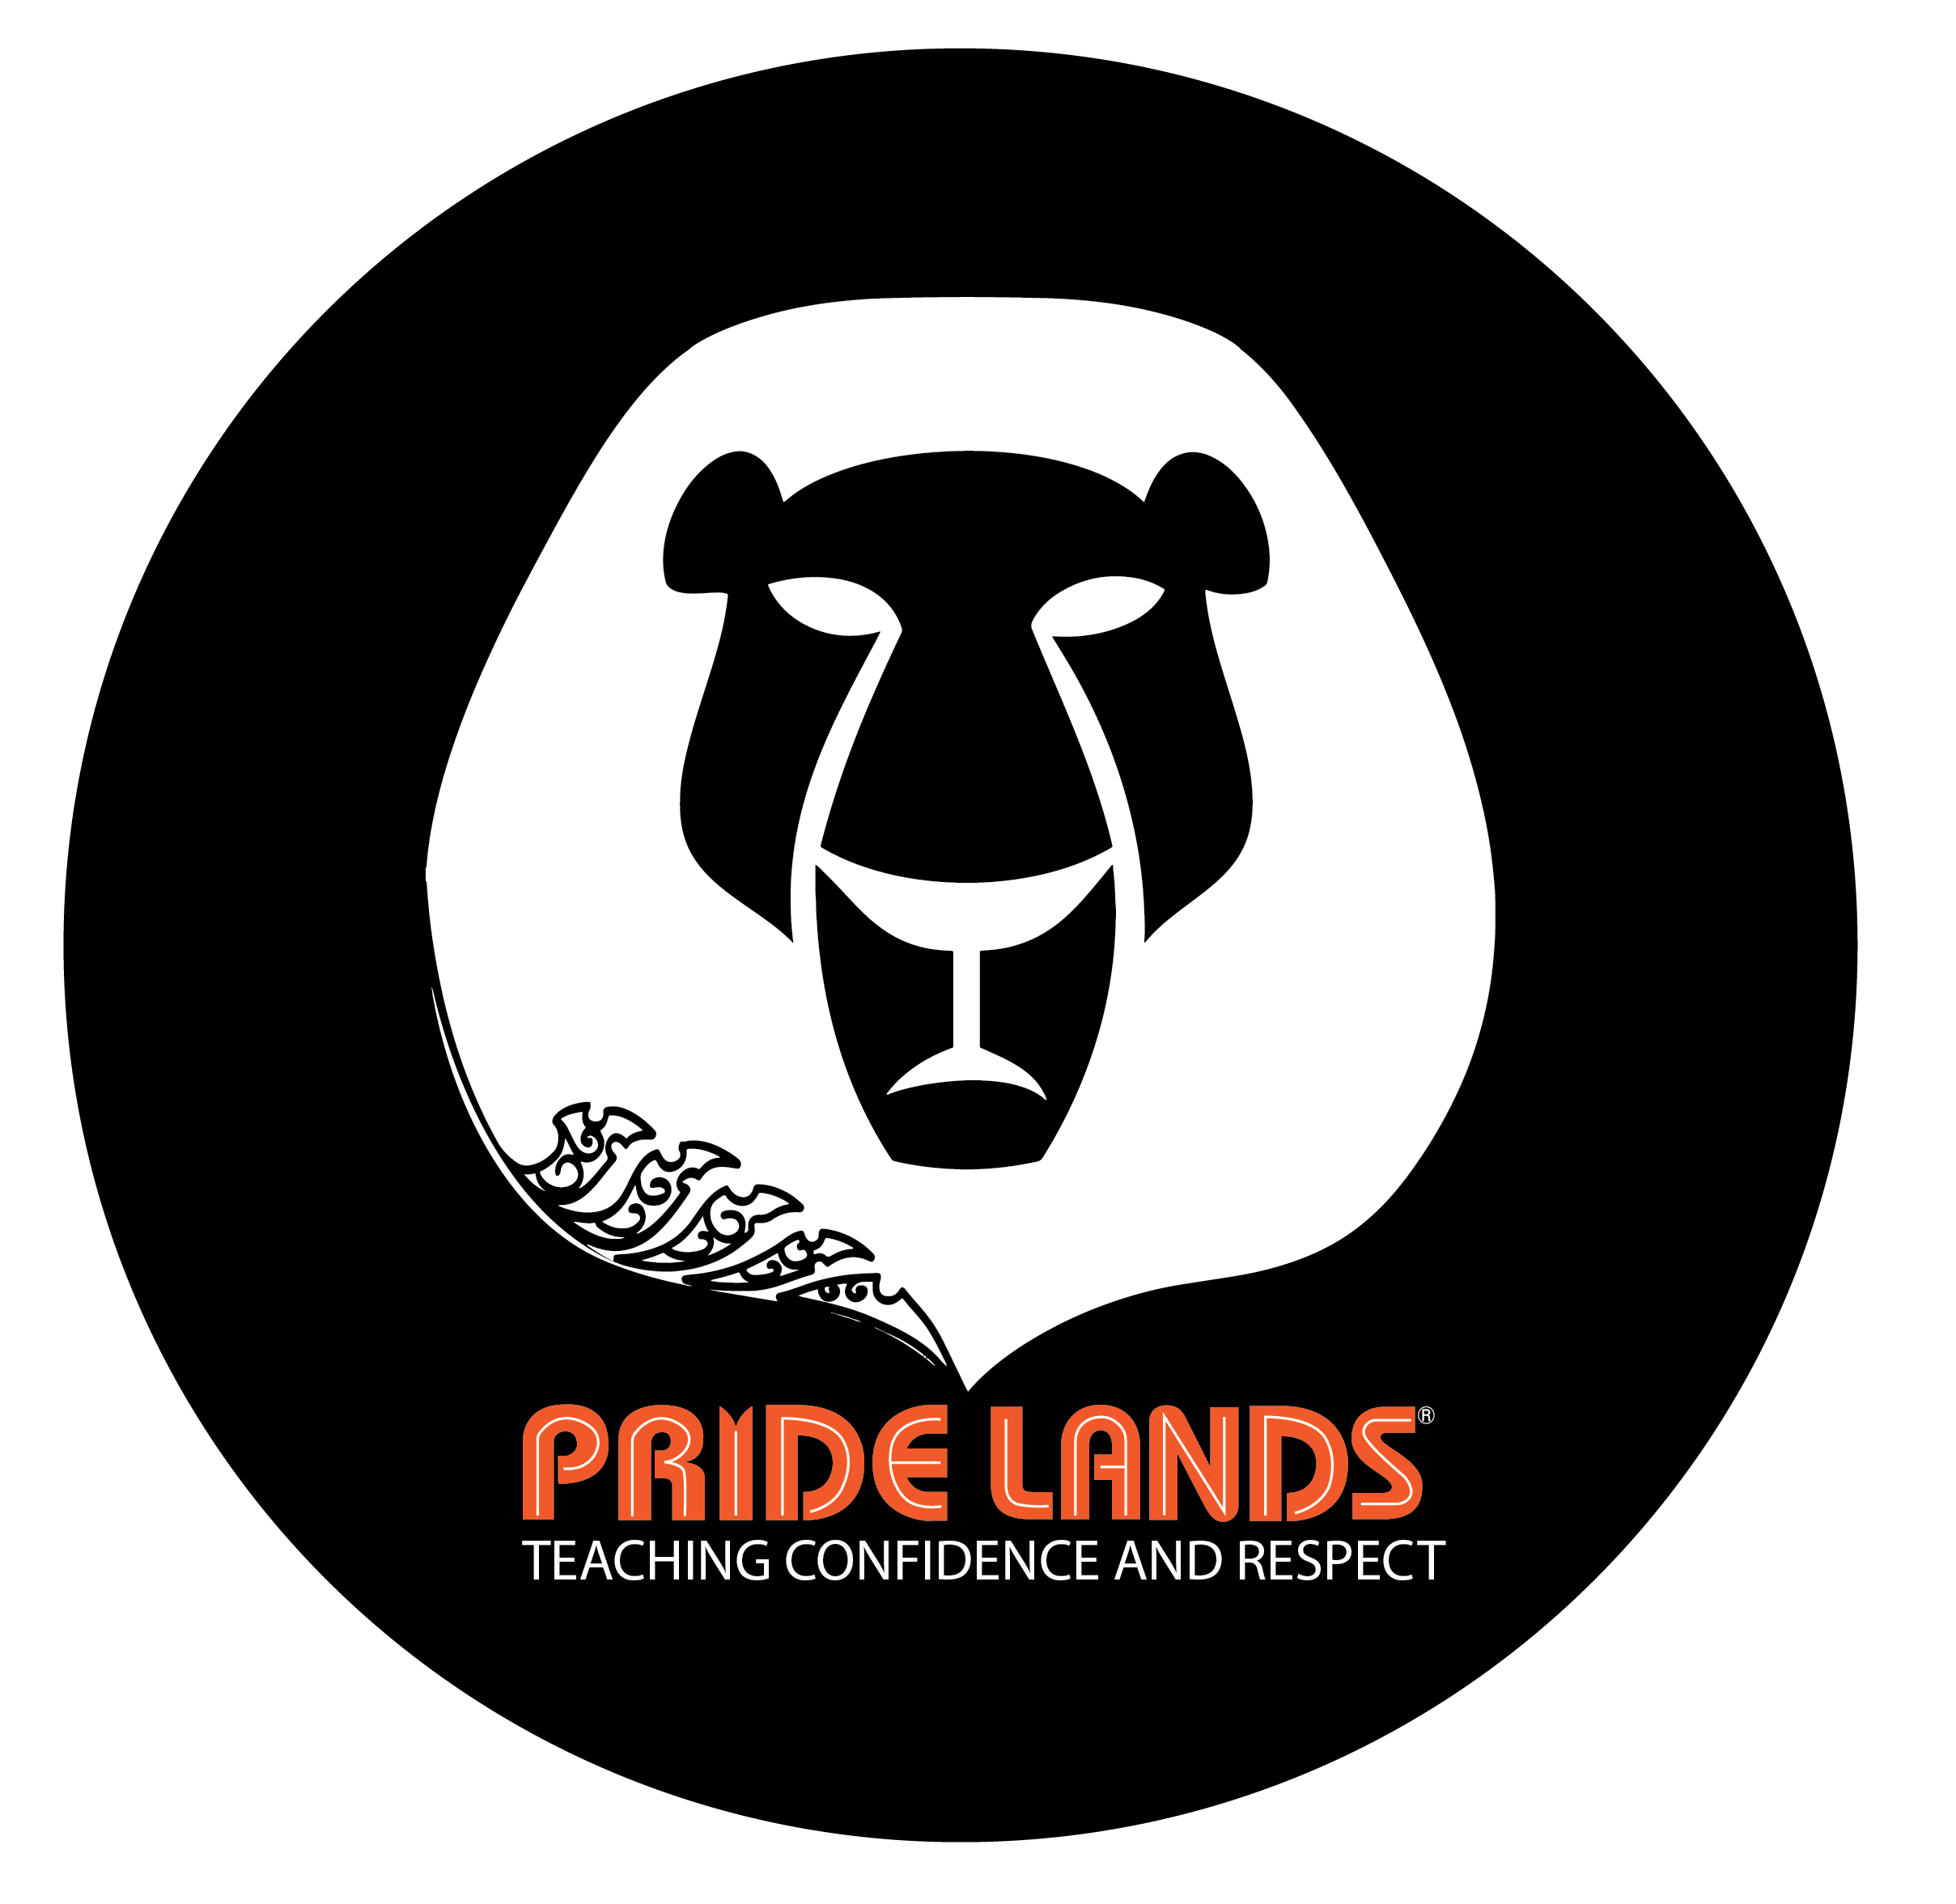 Enrol Pride Lands Childcare